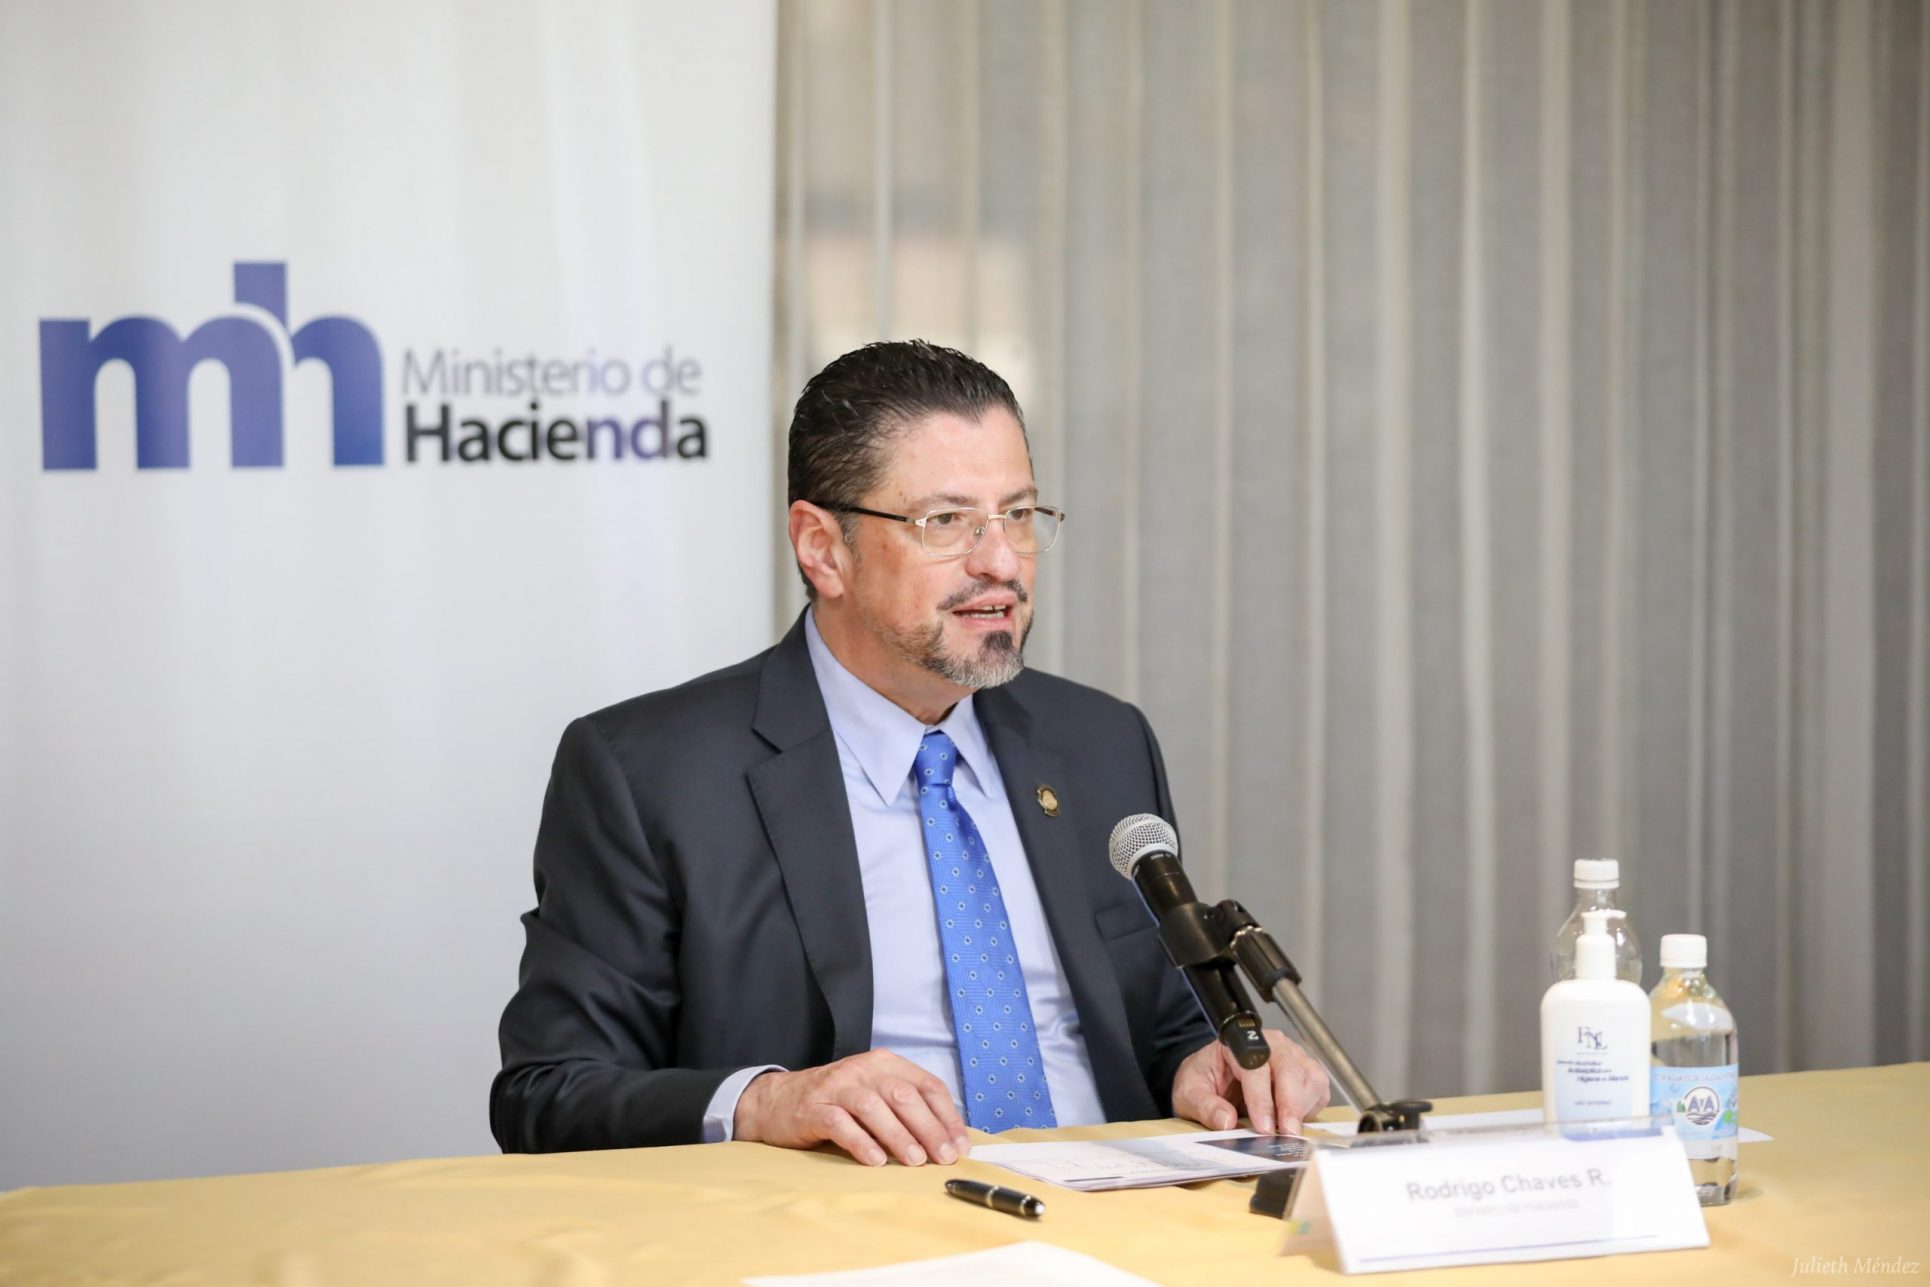 Rodrigo Chaves impulsó levantar el secreto bancario cuando era ministro, como candidato lo reiteró